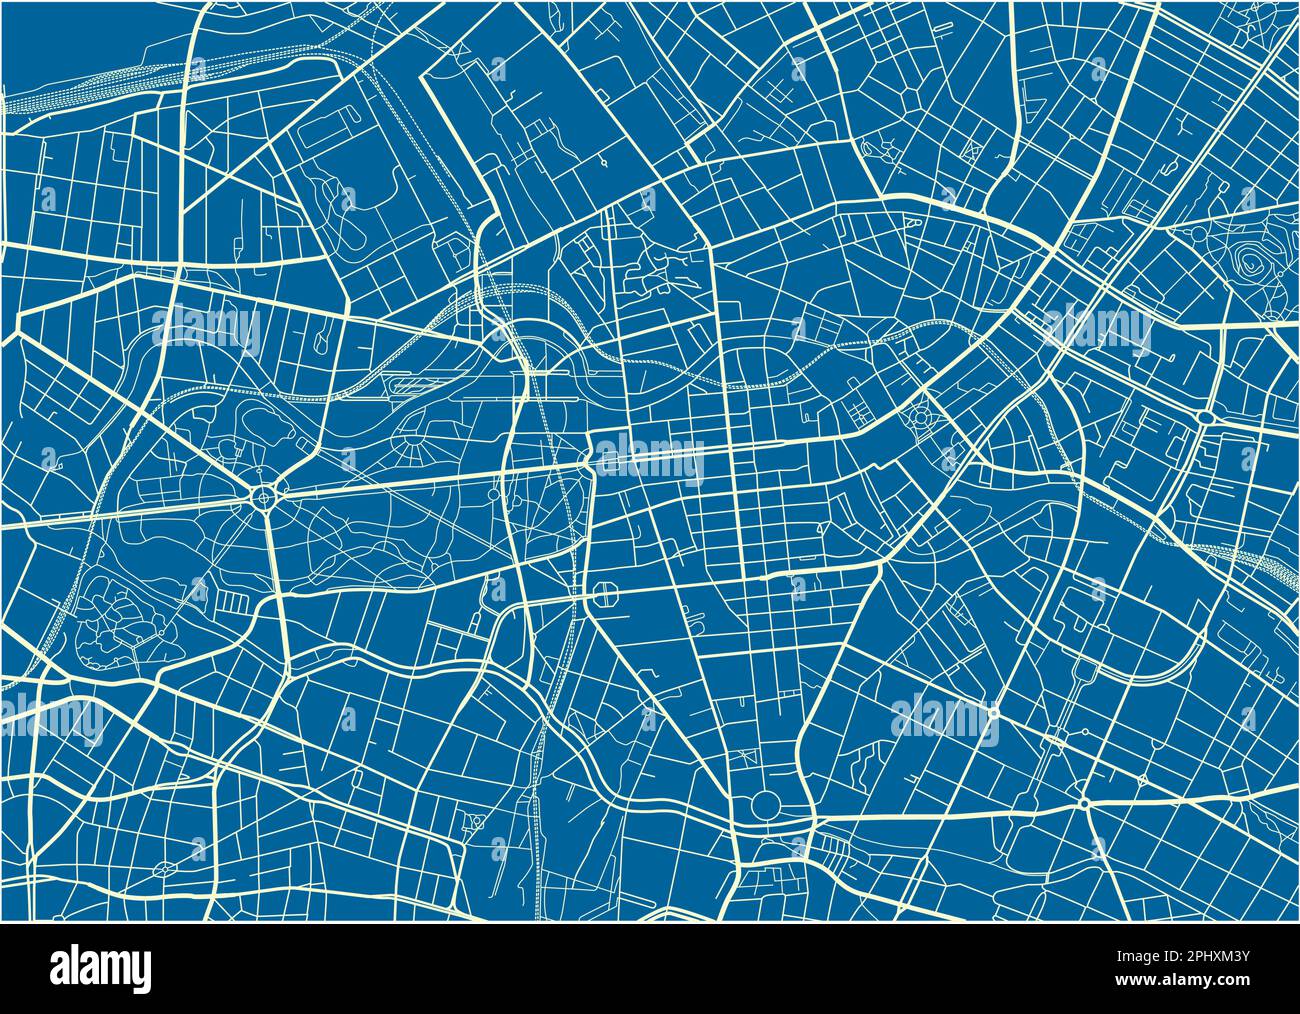 Blau-weißer Vektor-Stadtplan von Berlin mit gut organisierten getrennten Schichten. Stock Vektor